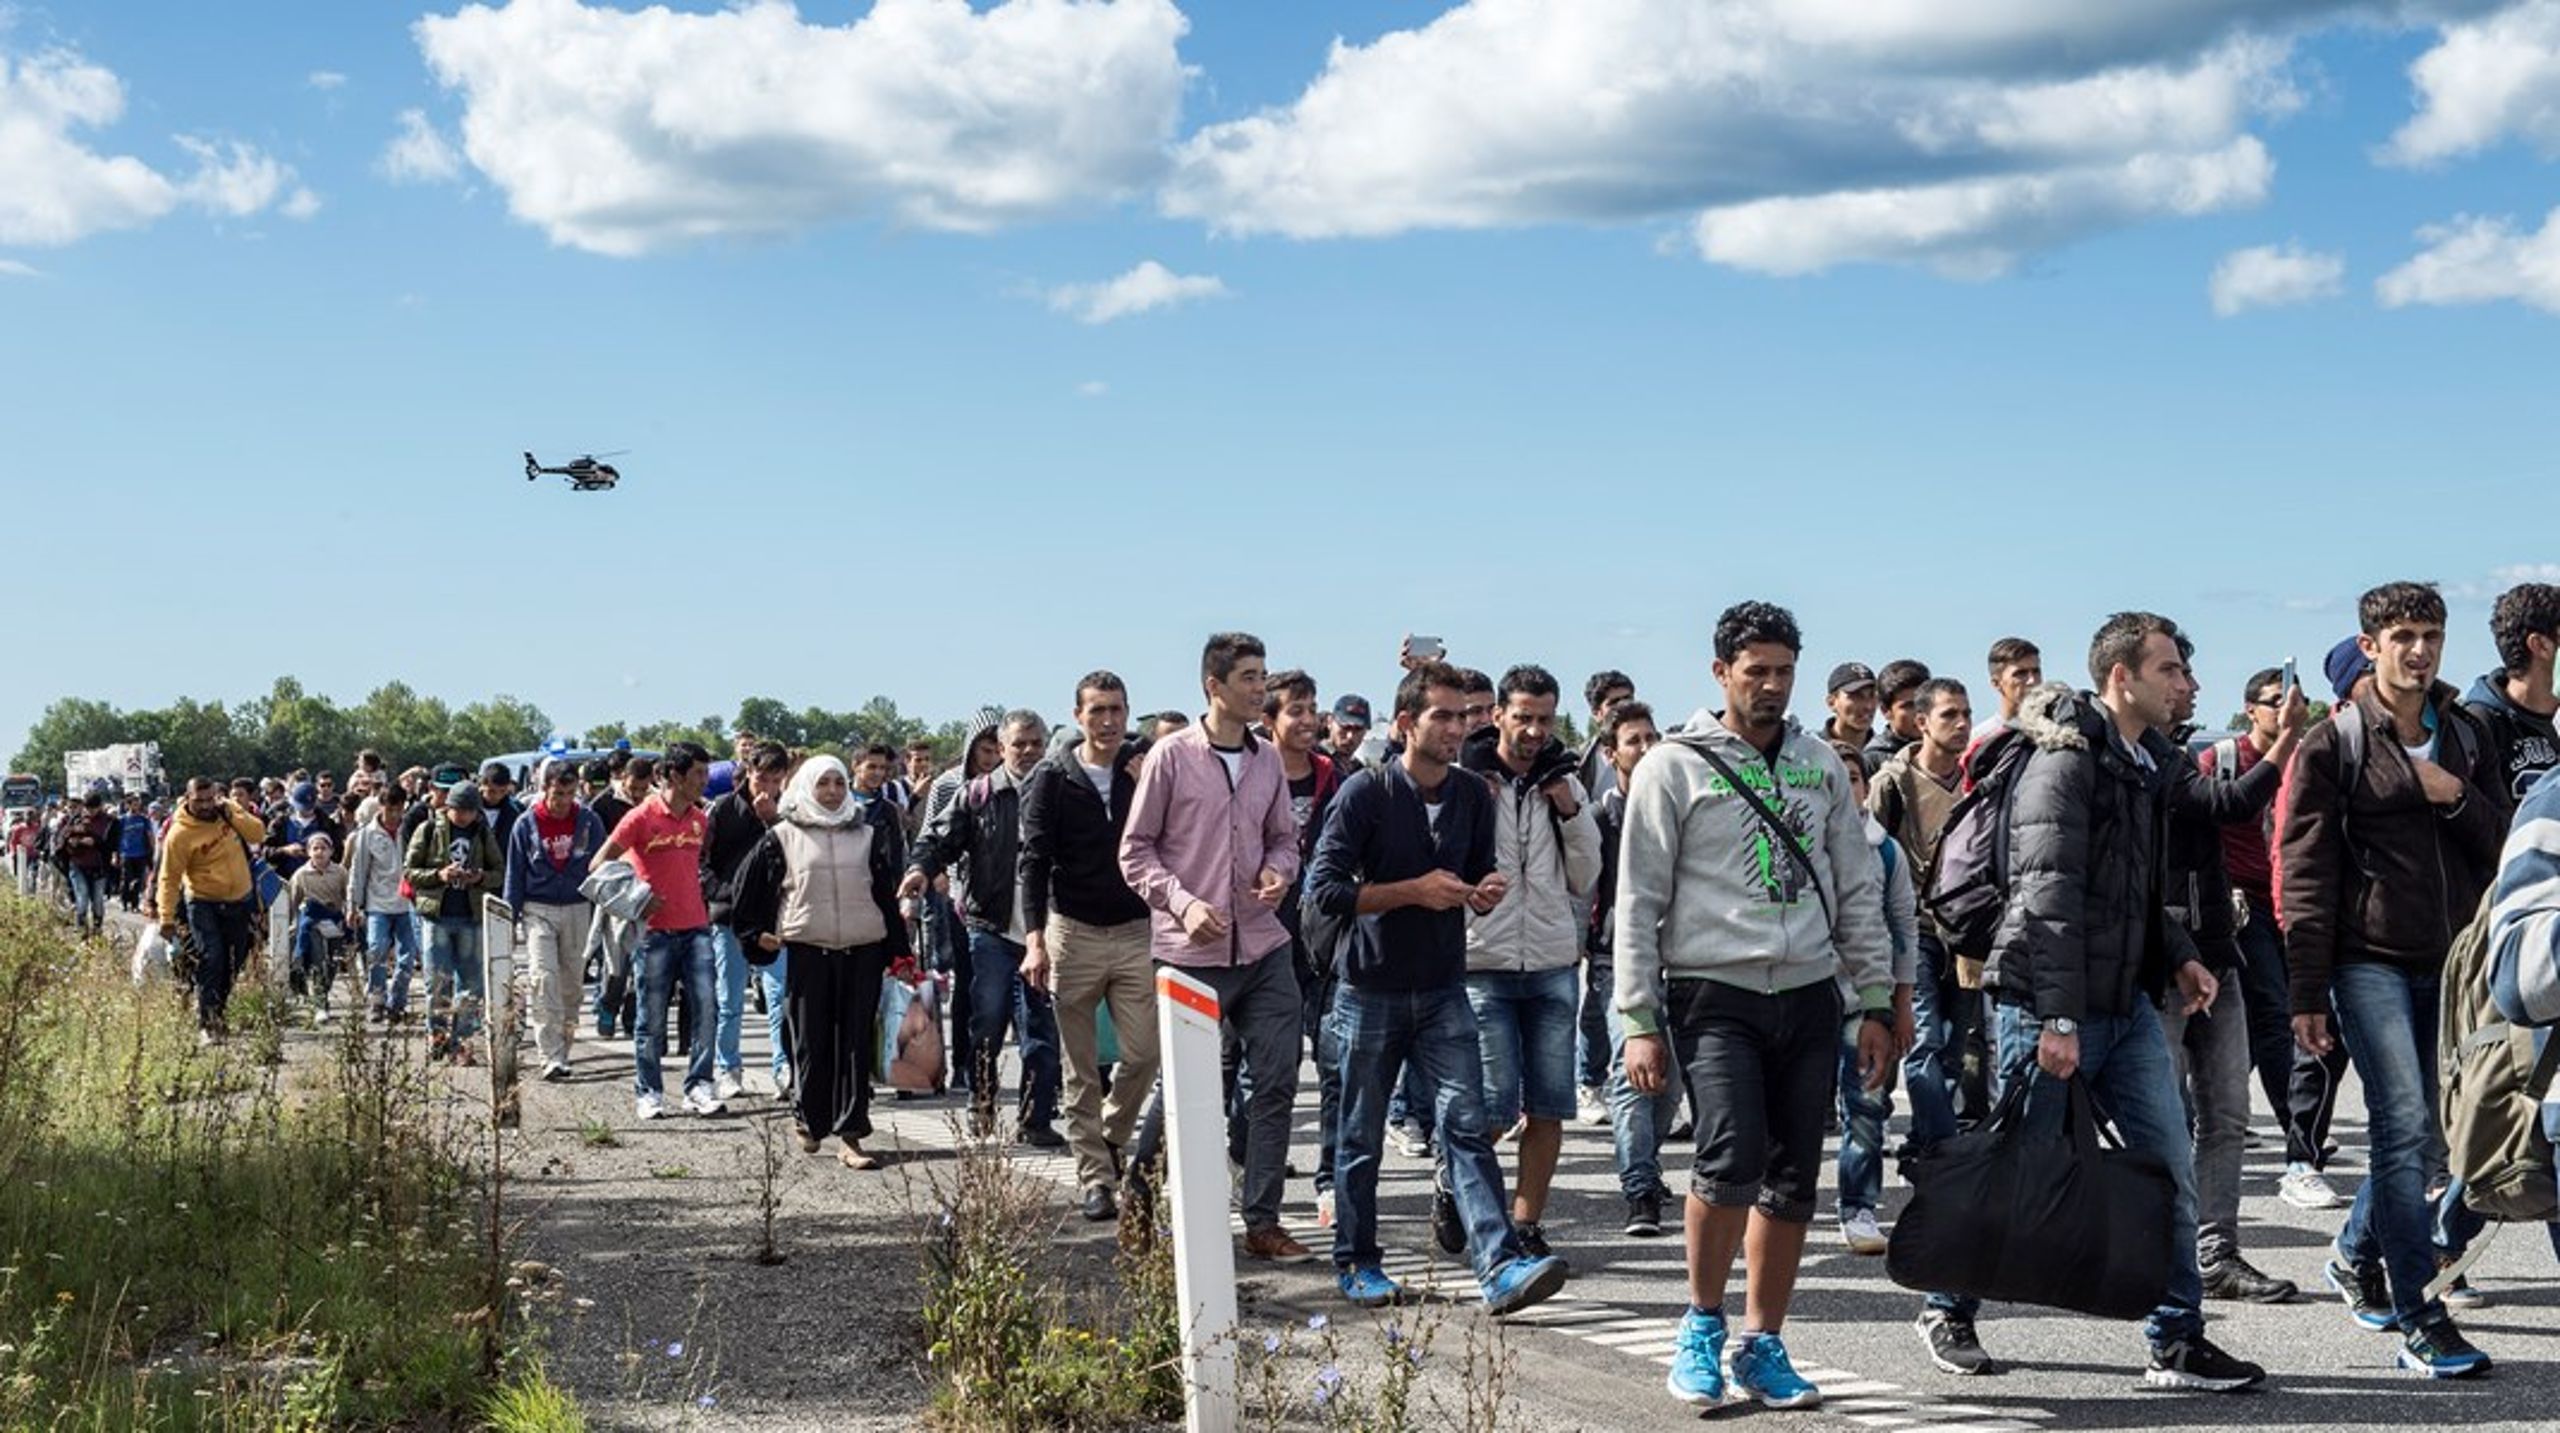 Flygtninge og migranter på danske motorveje. Det er præcis det, regeringen for enhver pris vil undgå en gentagelse af.